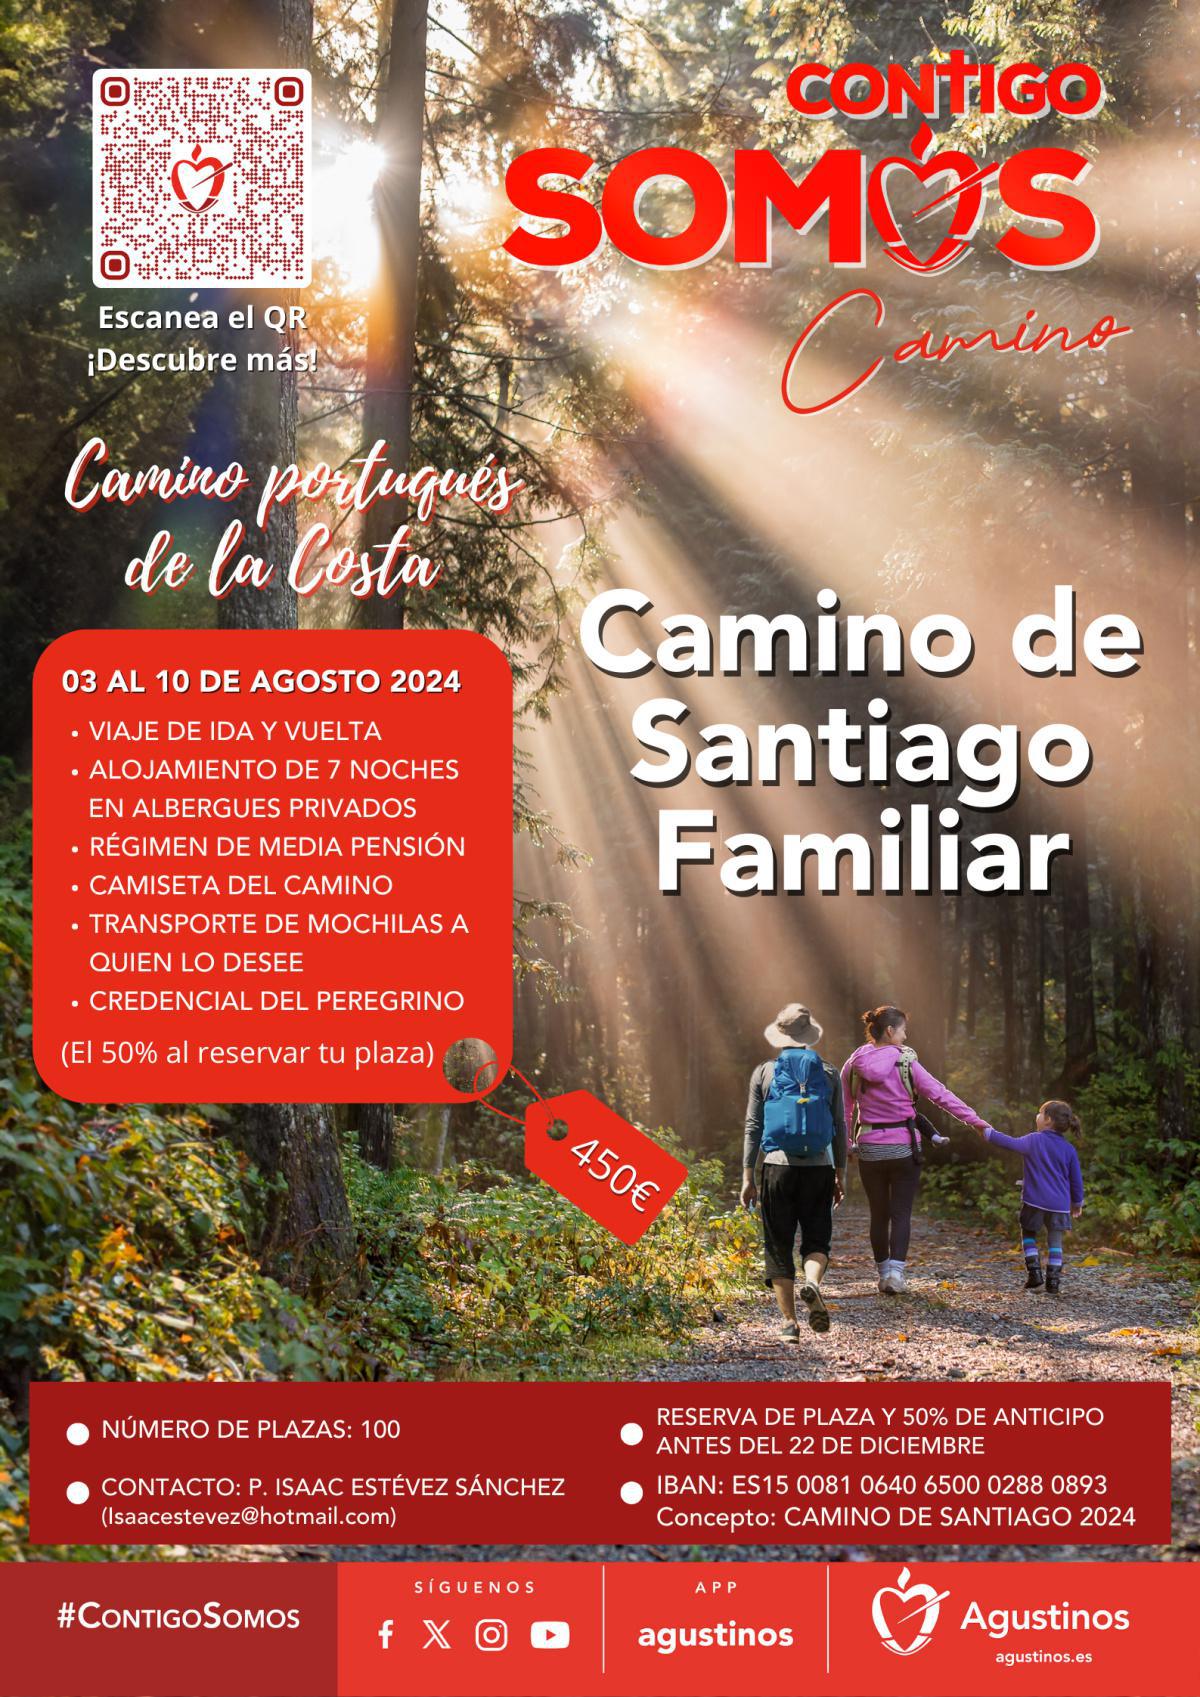 Camino de Santiago Familiar (03 al 10 de agosto)